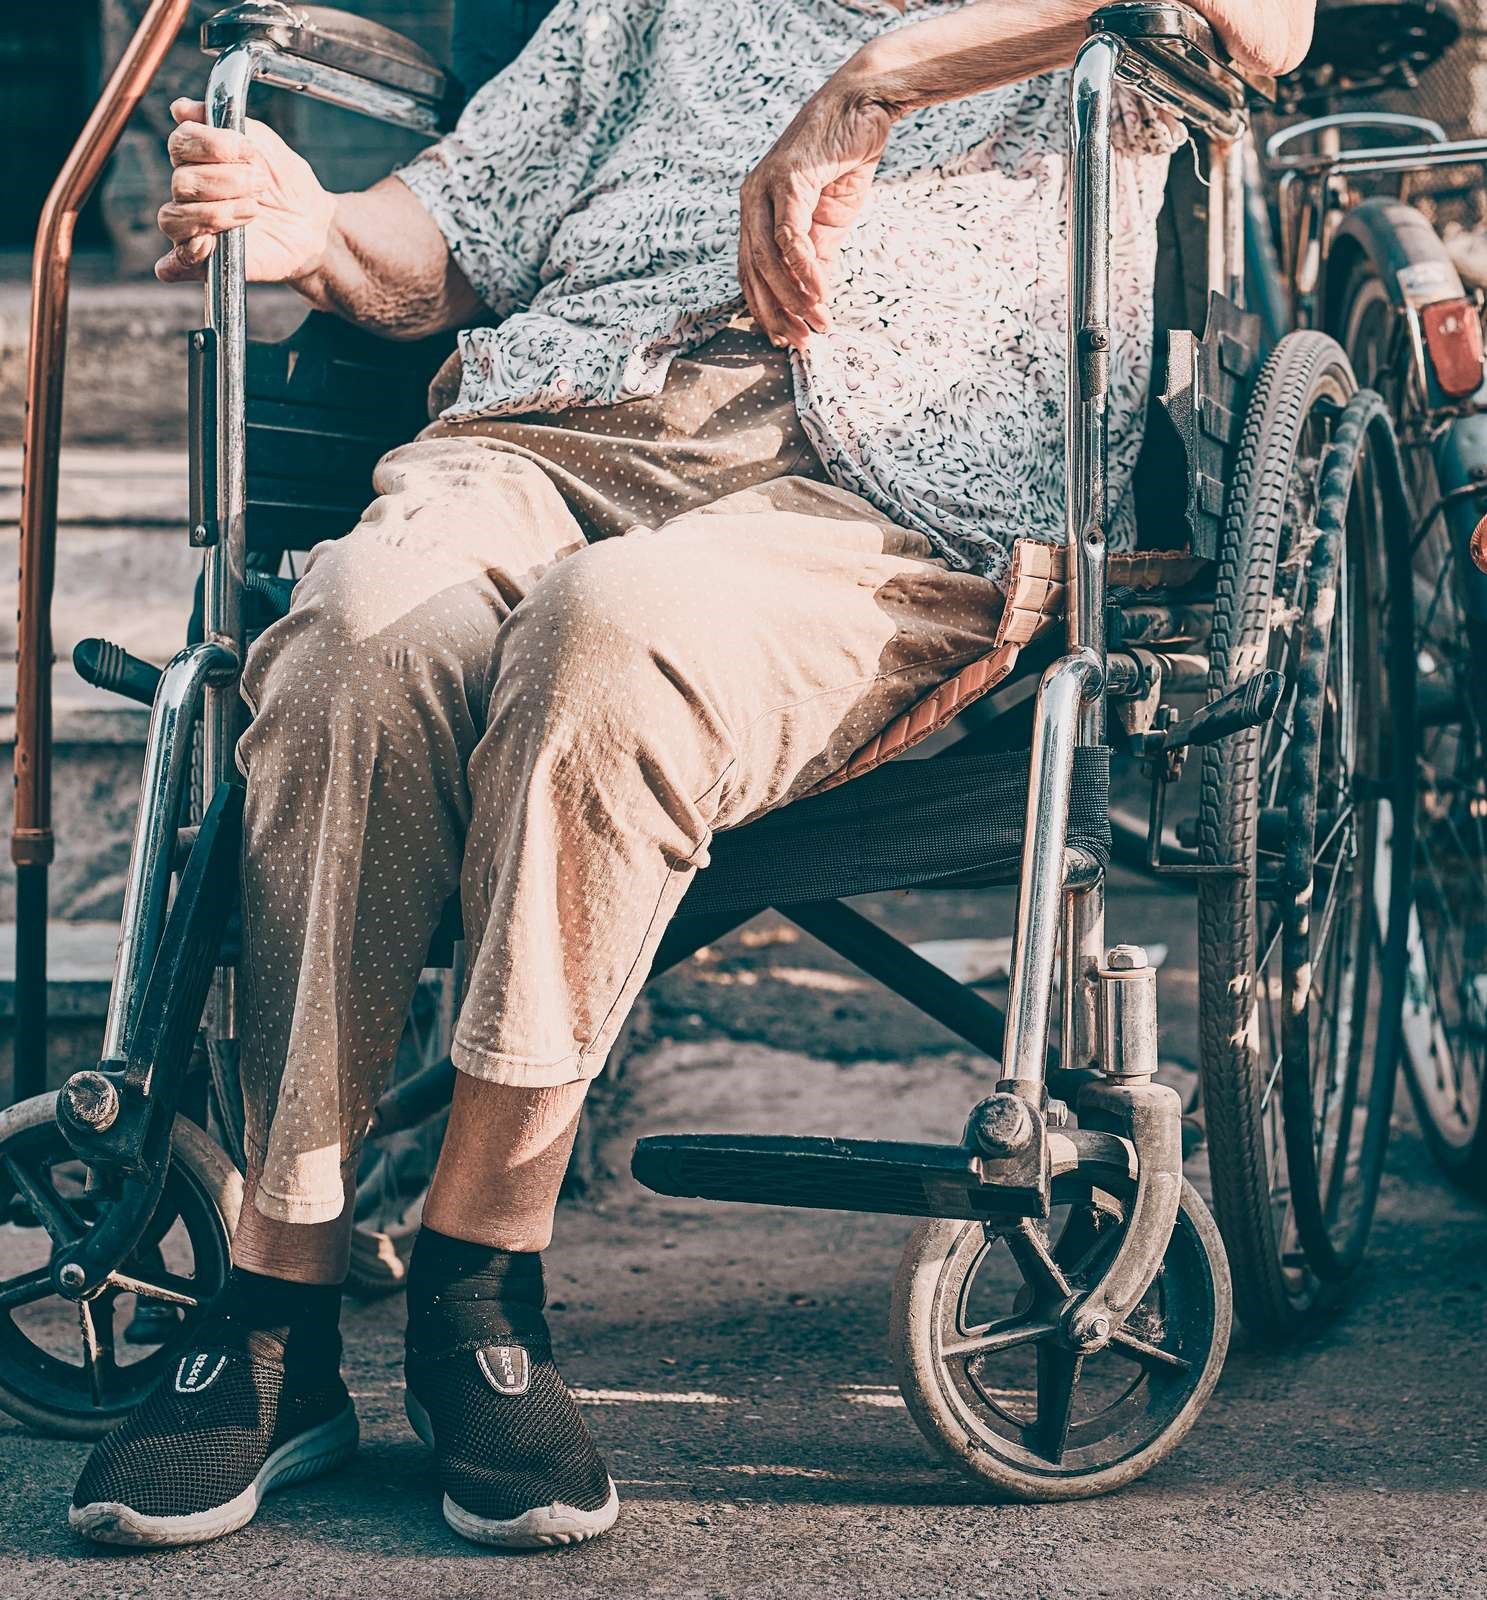 Ældre dame i kørestol.